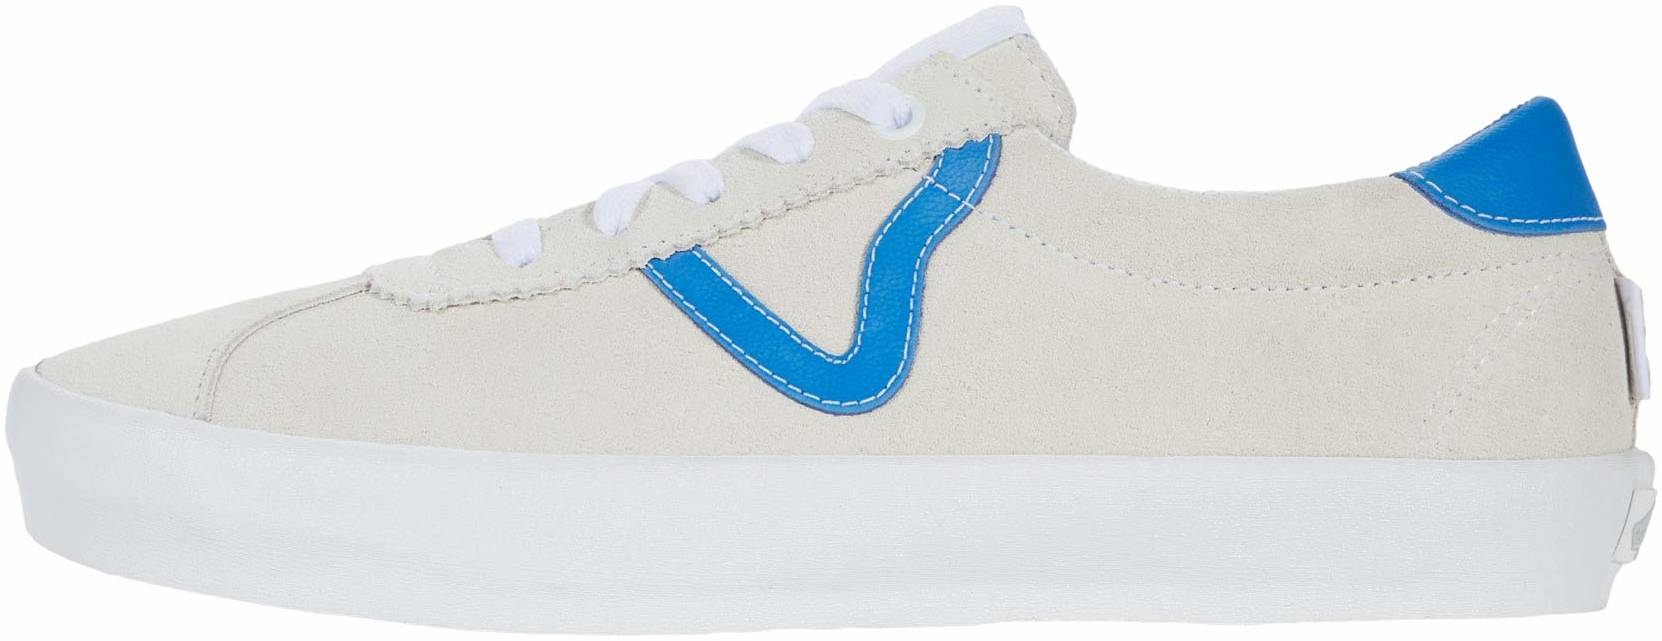 Vans Skate Sport sneakers in blue (only 